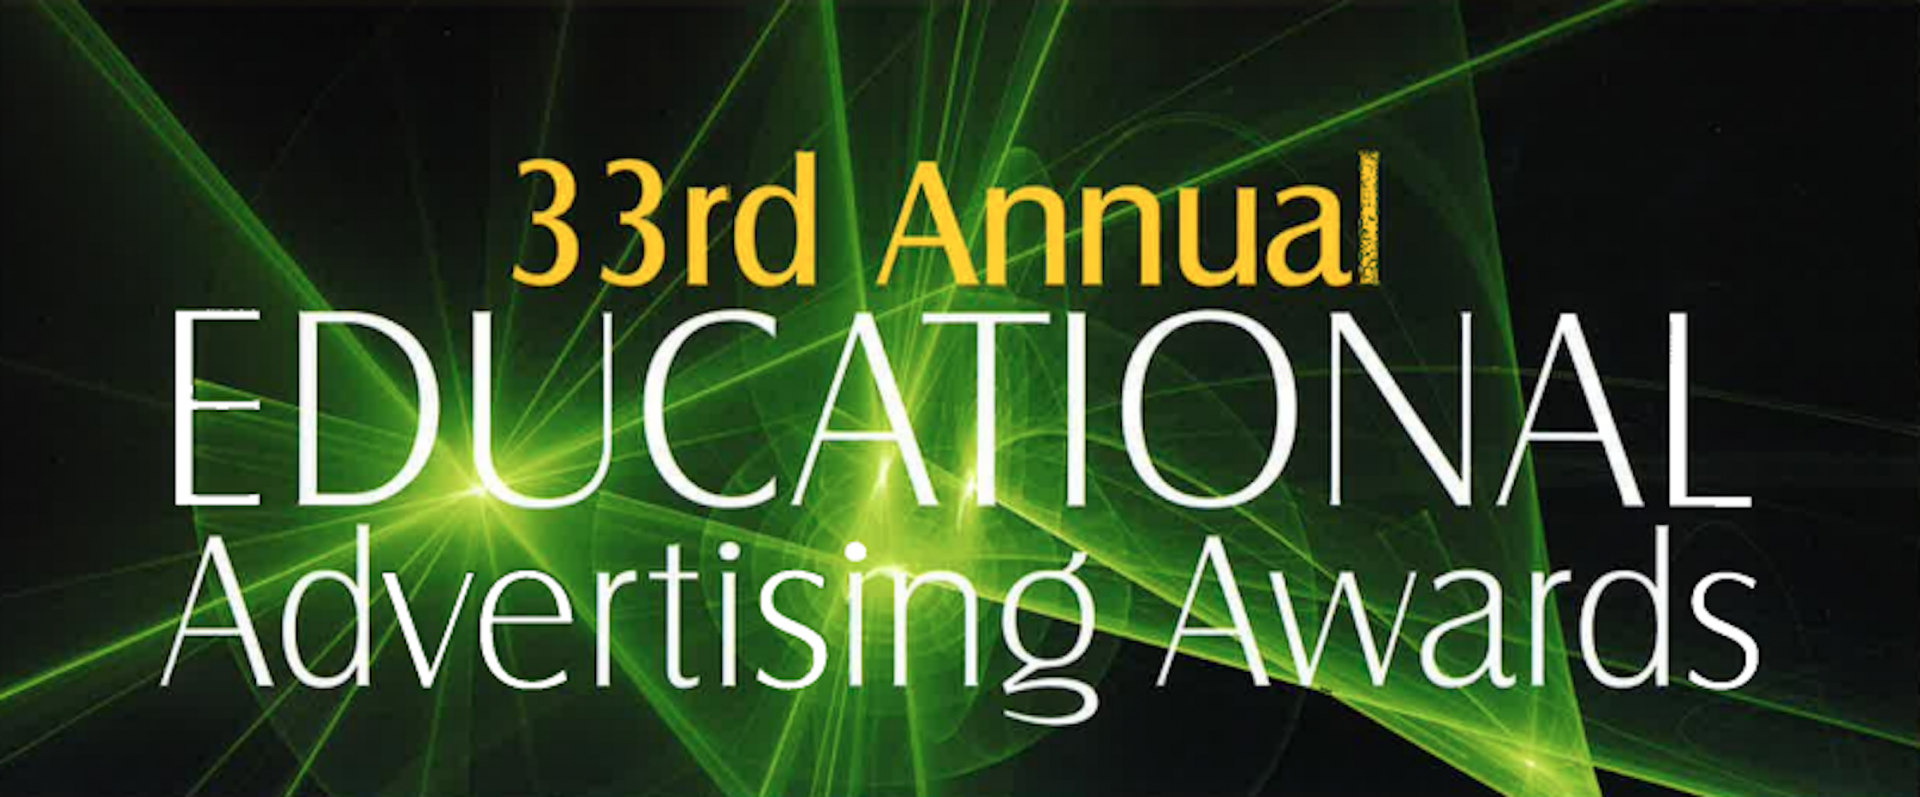 Educational Awards logo